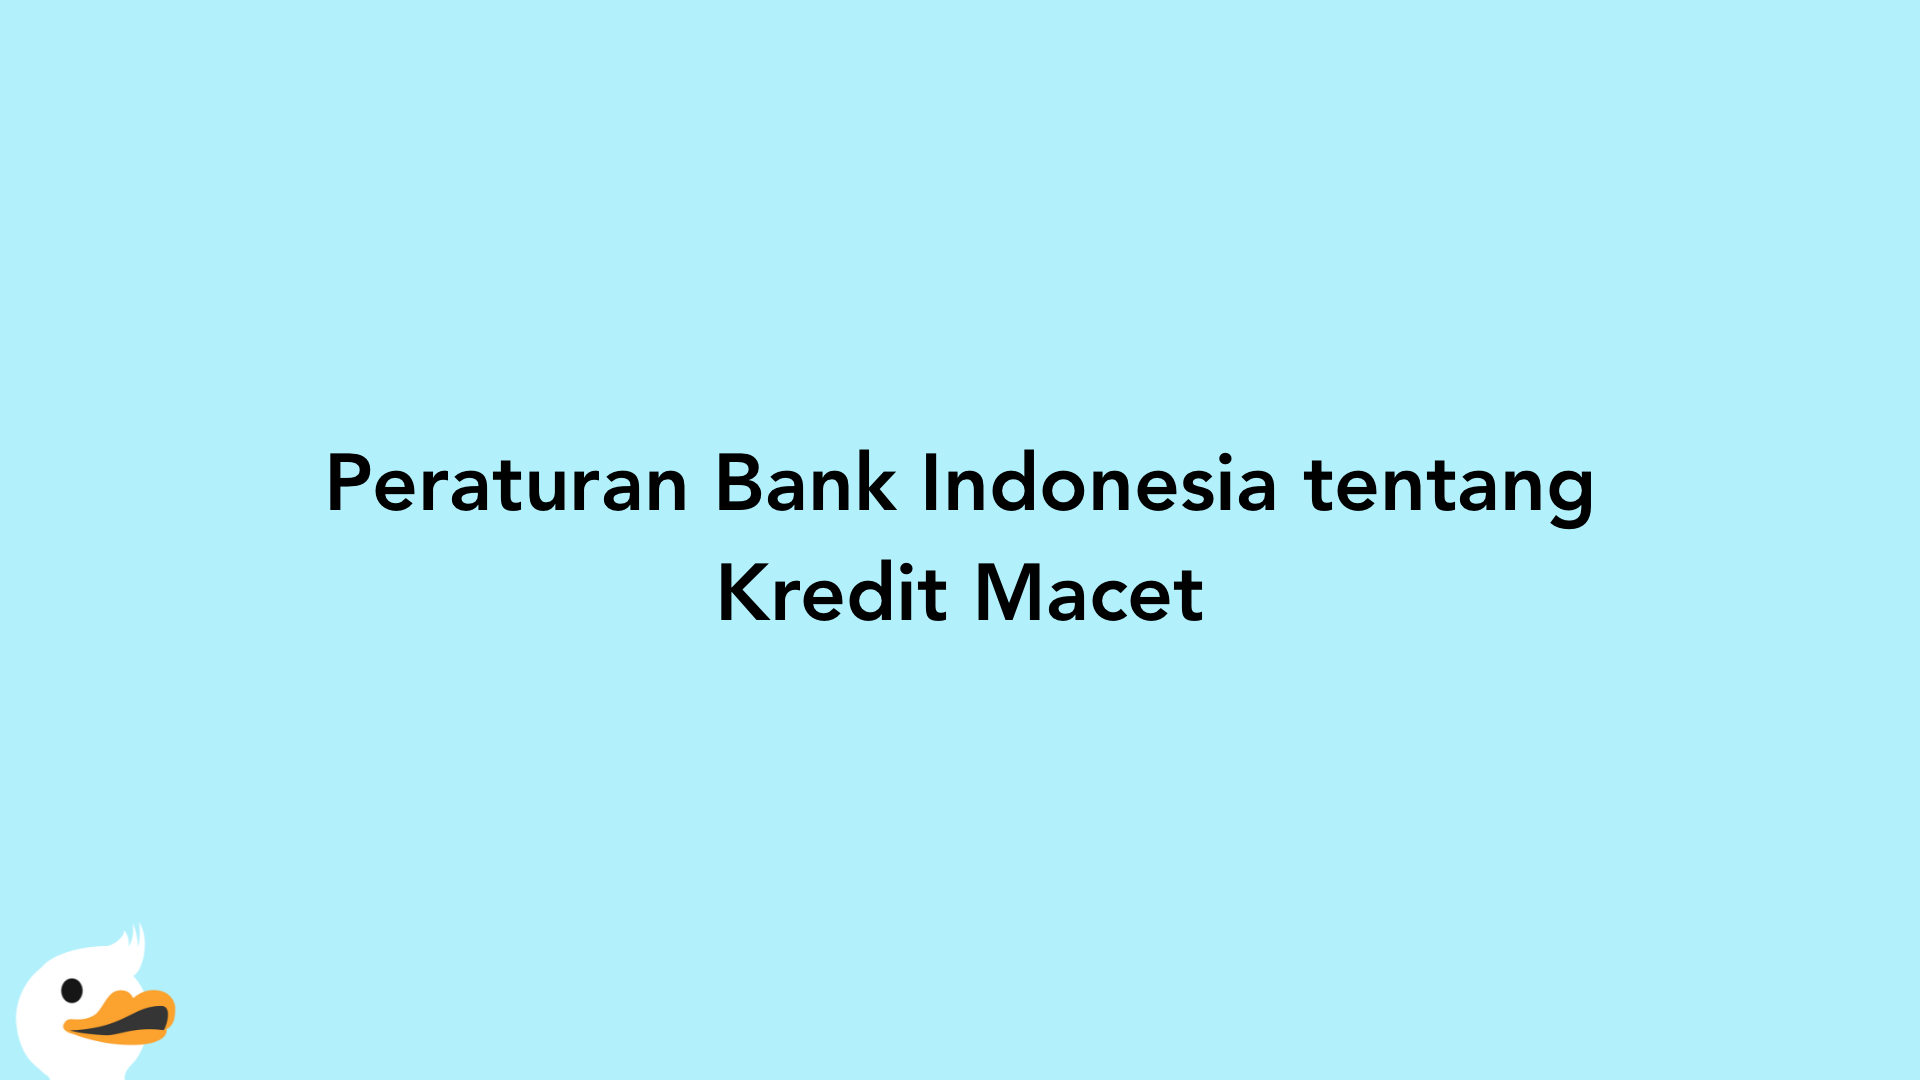 Peraturan Bank Indonesia tentang Kredit Macet